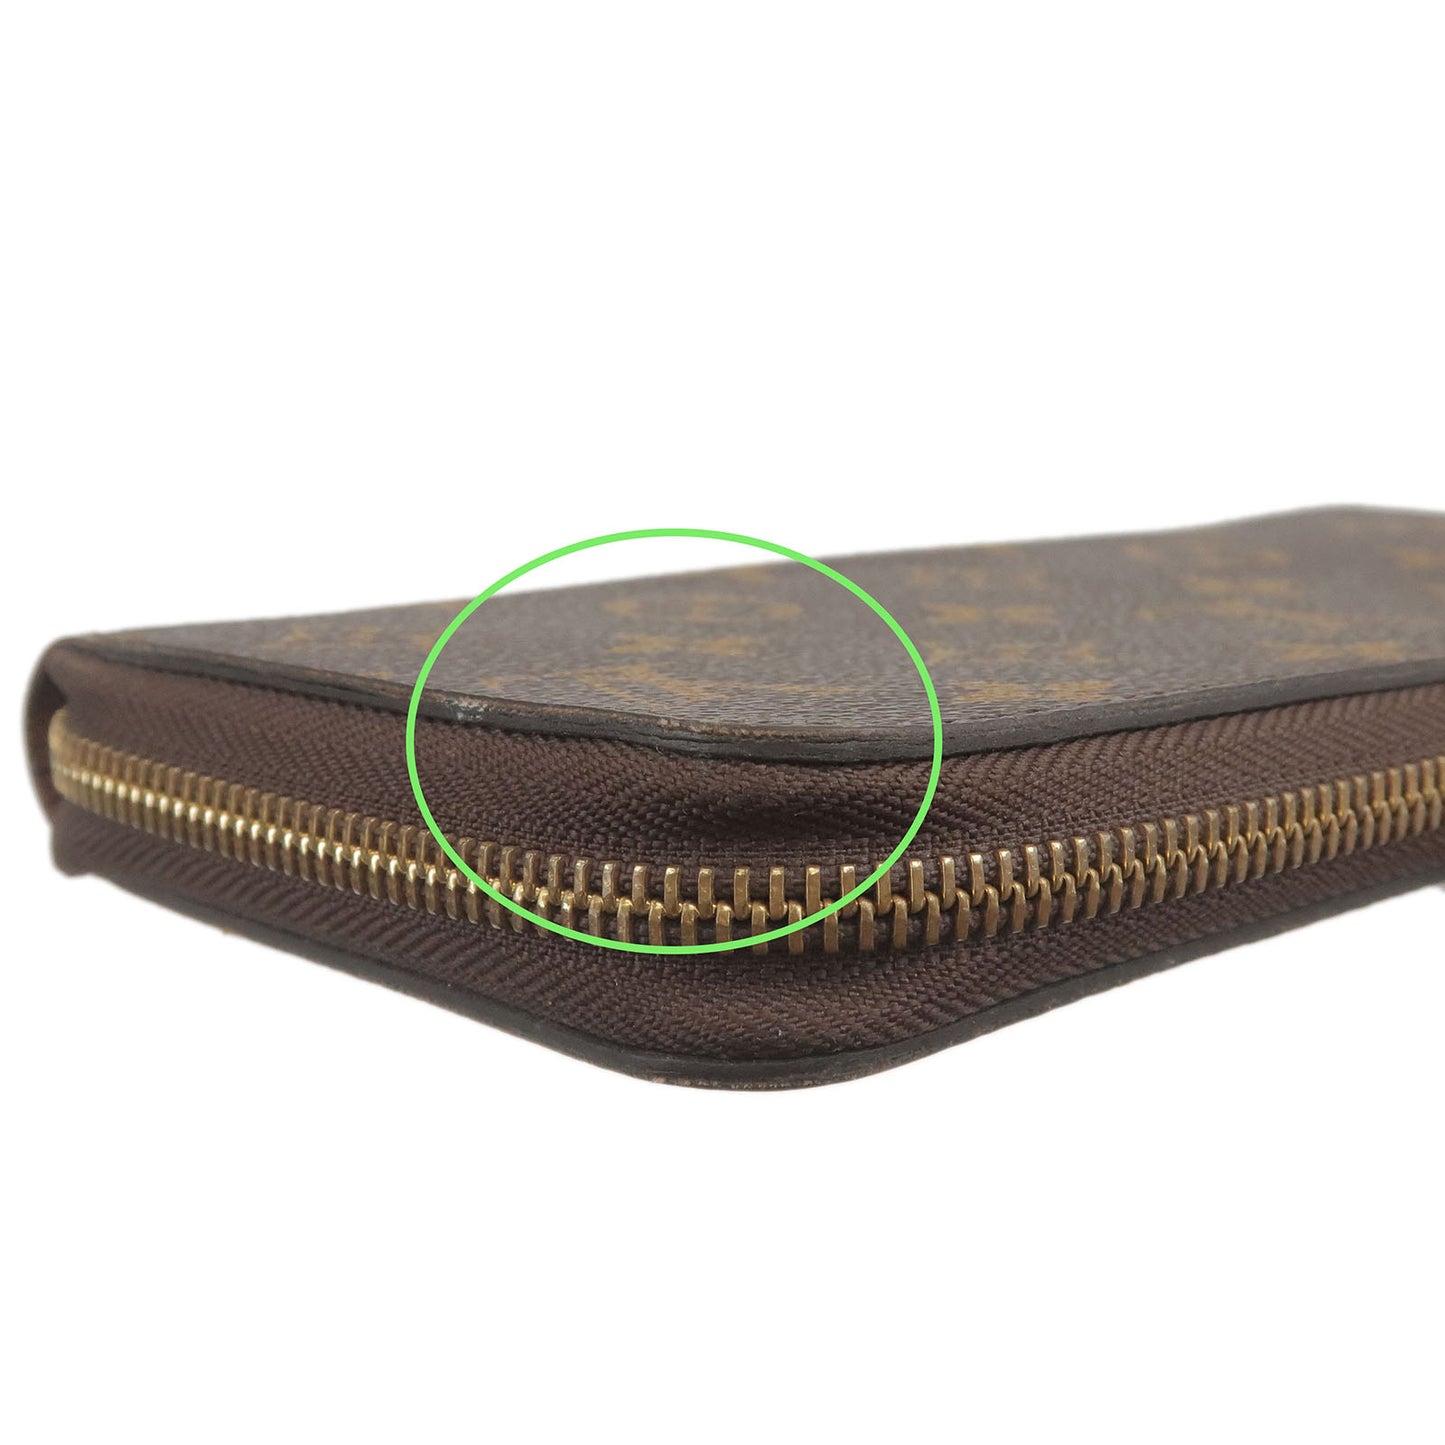 Louis Vuitton Monogram Zip Round Long Wallet M42616